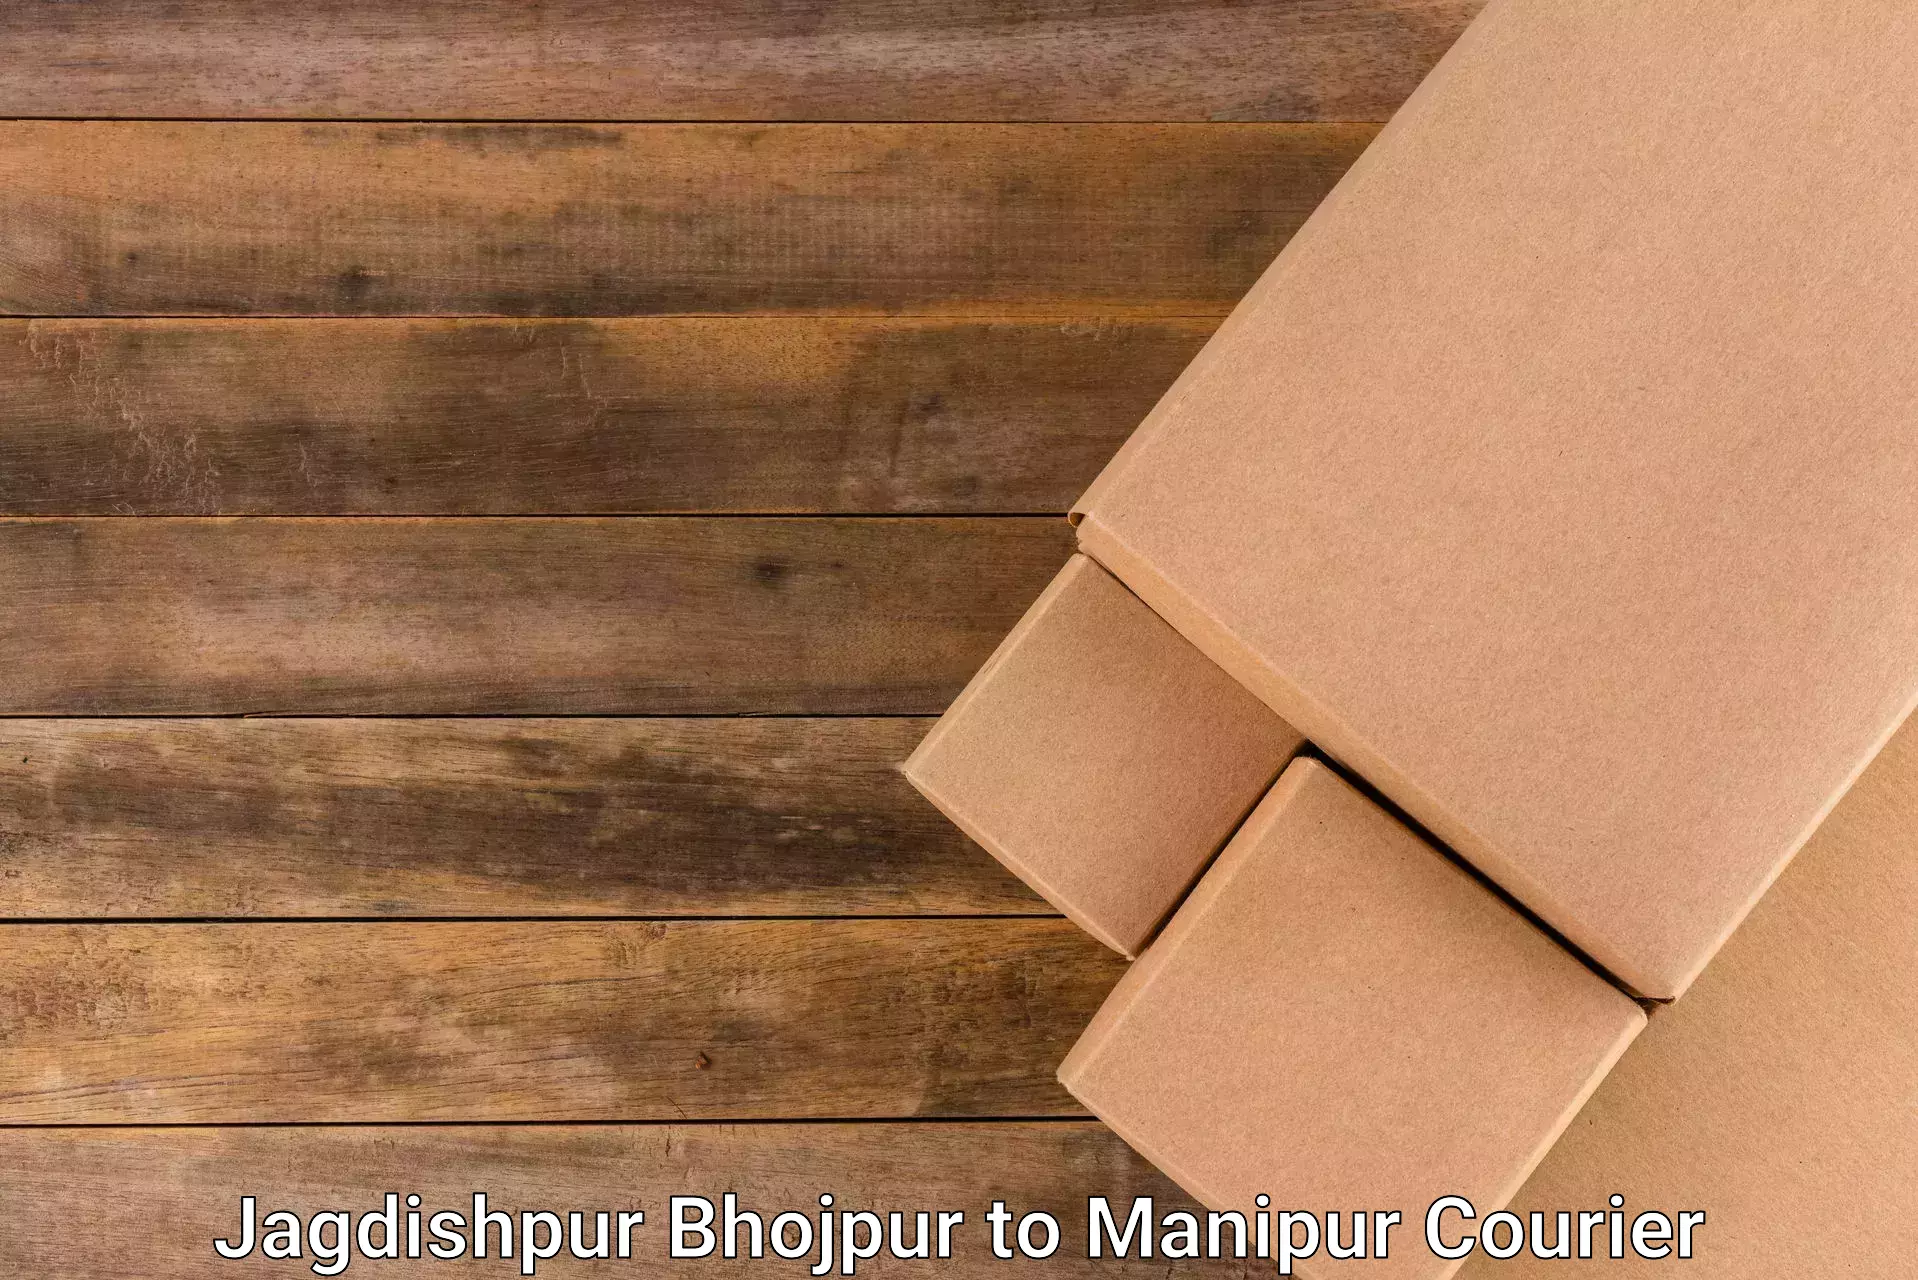 Global logistics network Jagdishpur Bhojpur to Kanti